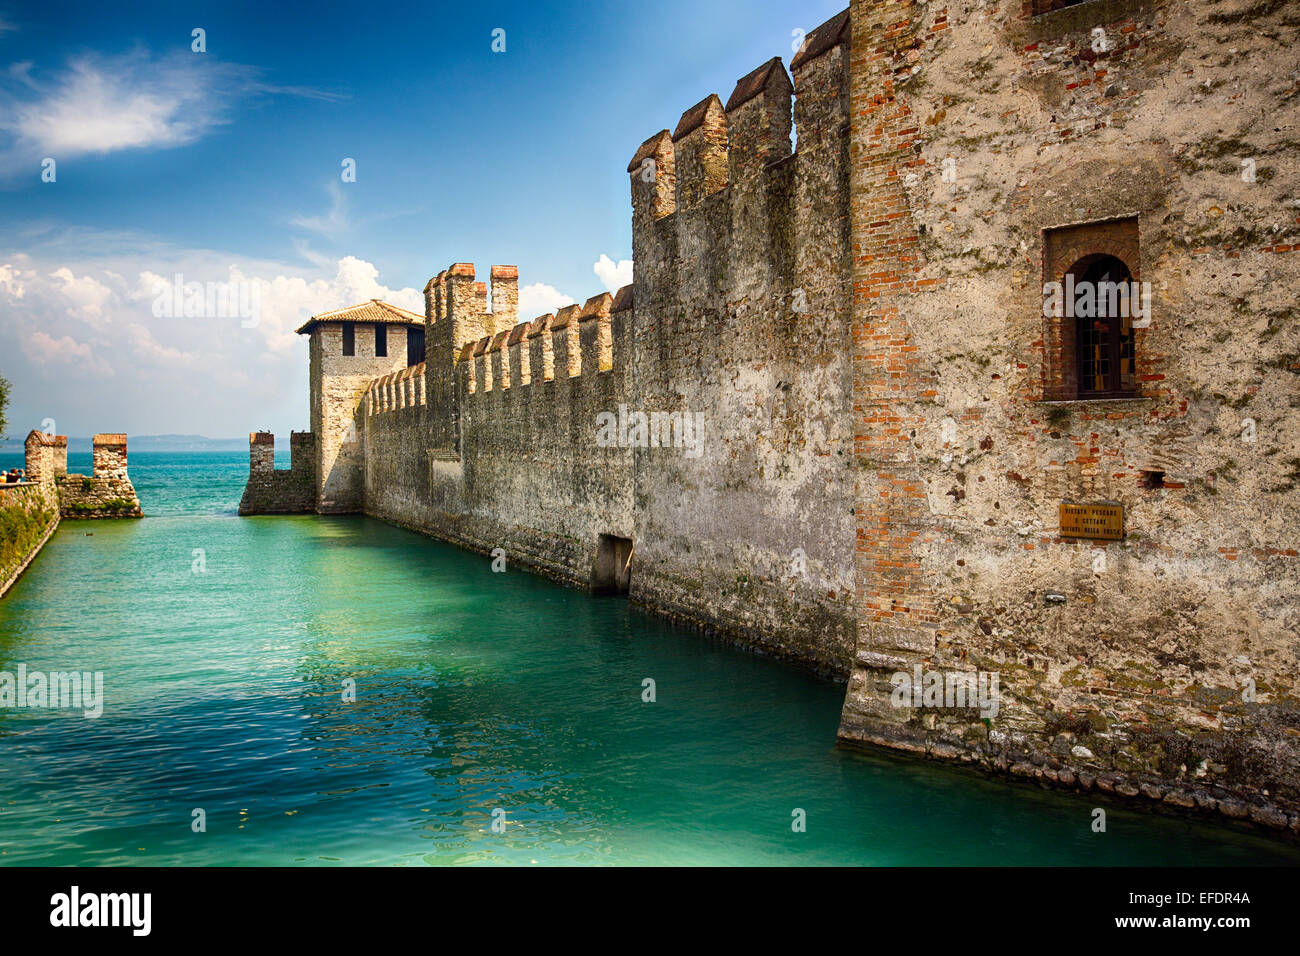 Vista di un castello nel lago, Castello Scaligero, Sirmione sul Lago di Garda, Lombardia, Italia Foto Stock